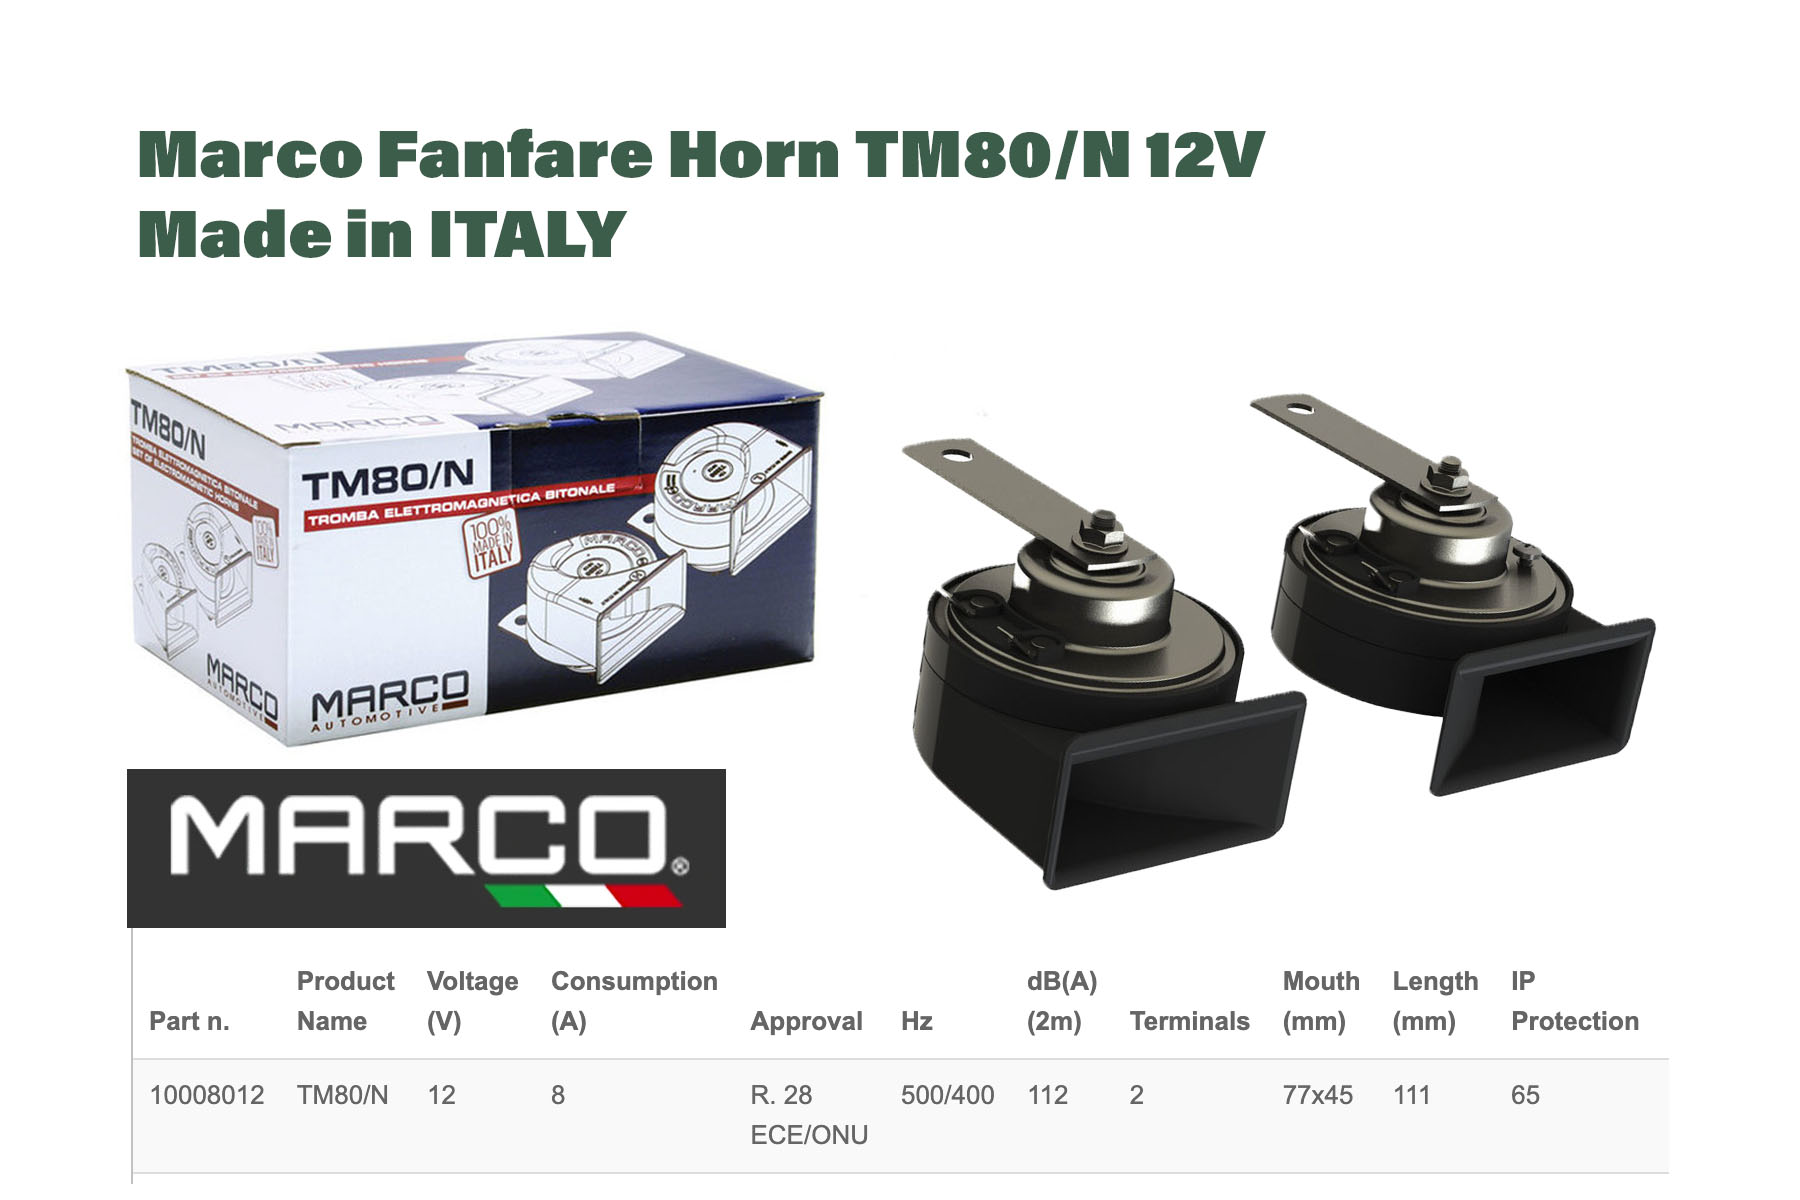 Marco Fanfare Horn TM80/N 12V